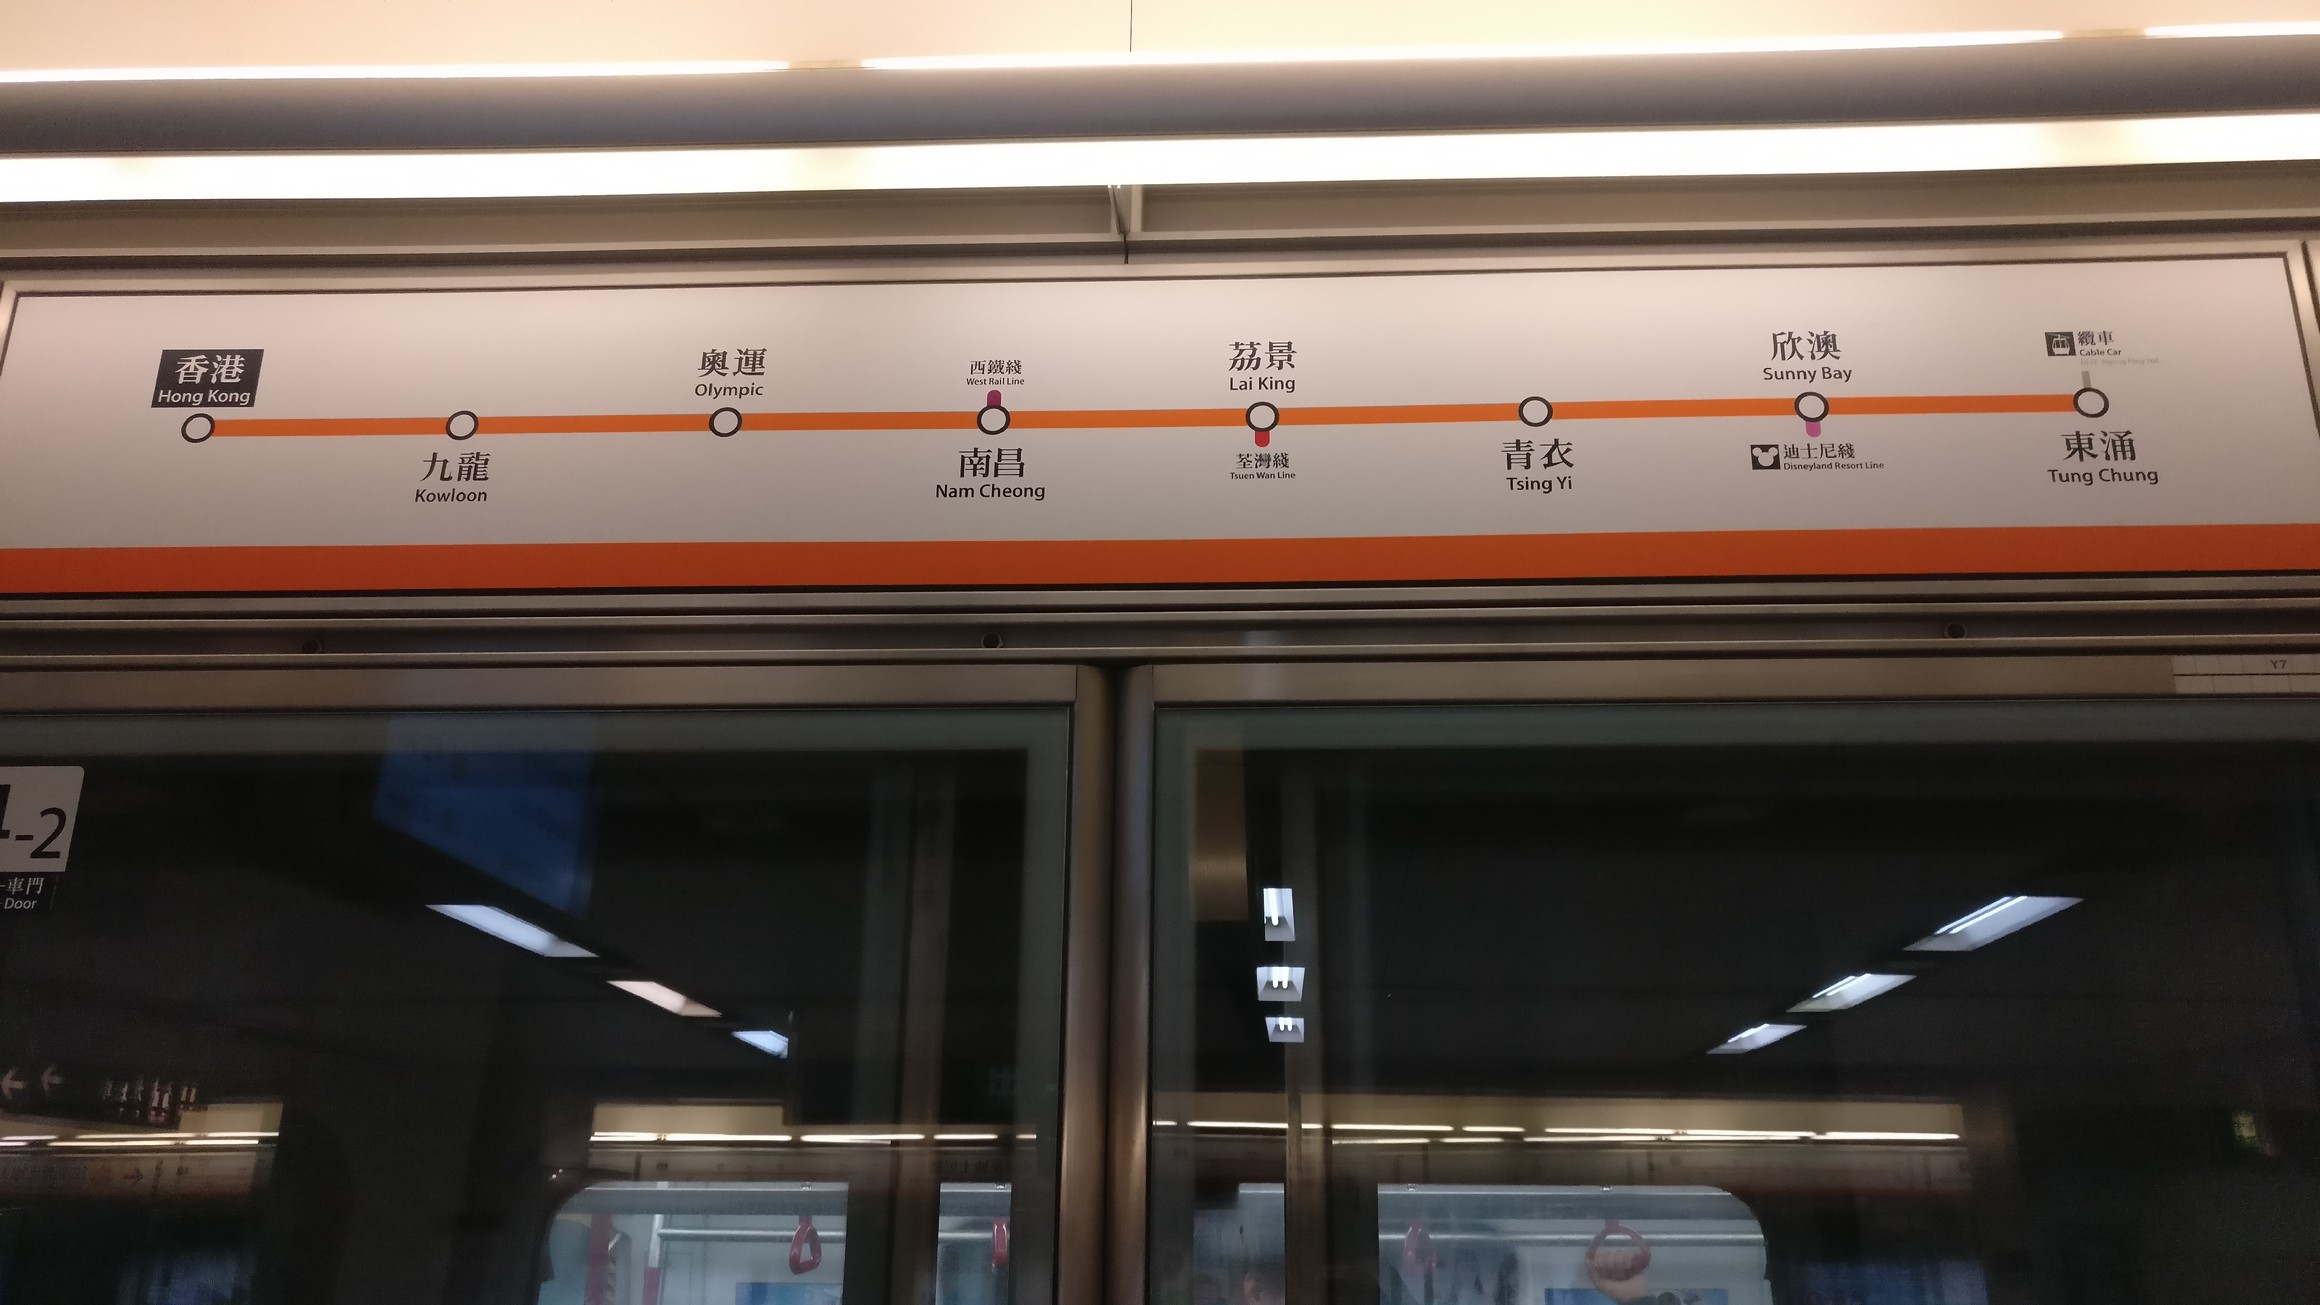 在欣澳站换乘迪斯尼线.迪斯尼线只有在此换乘.